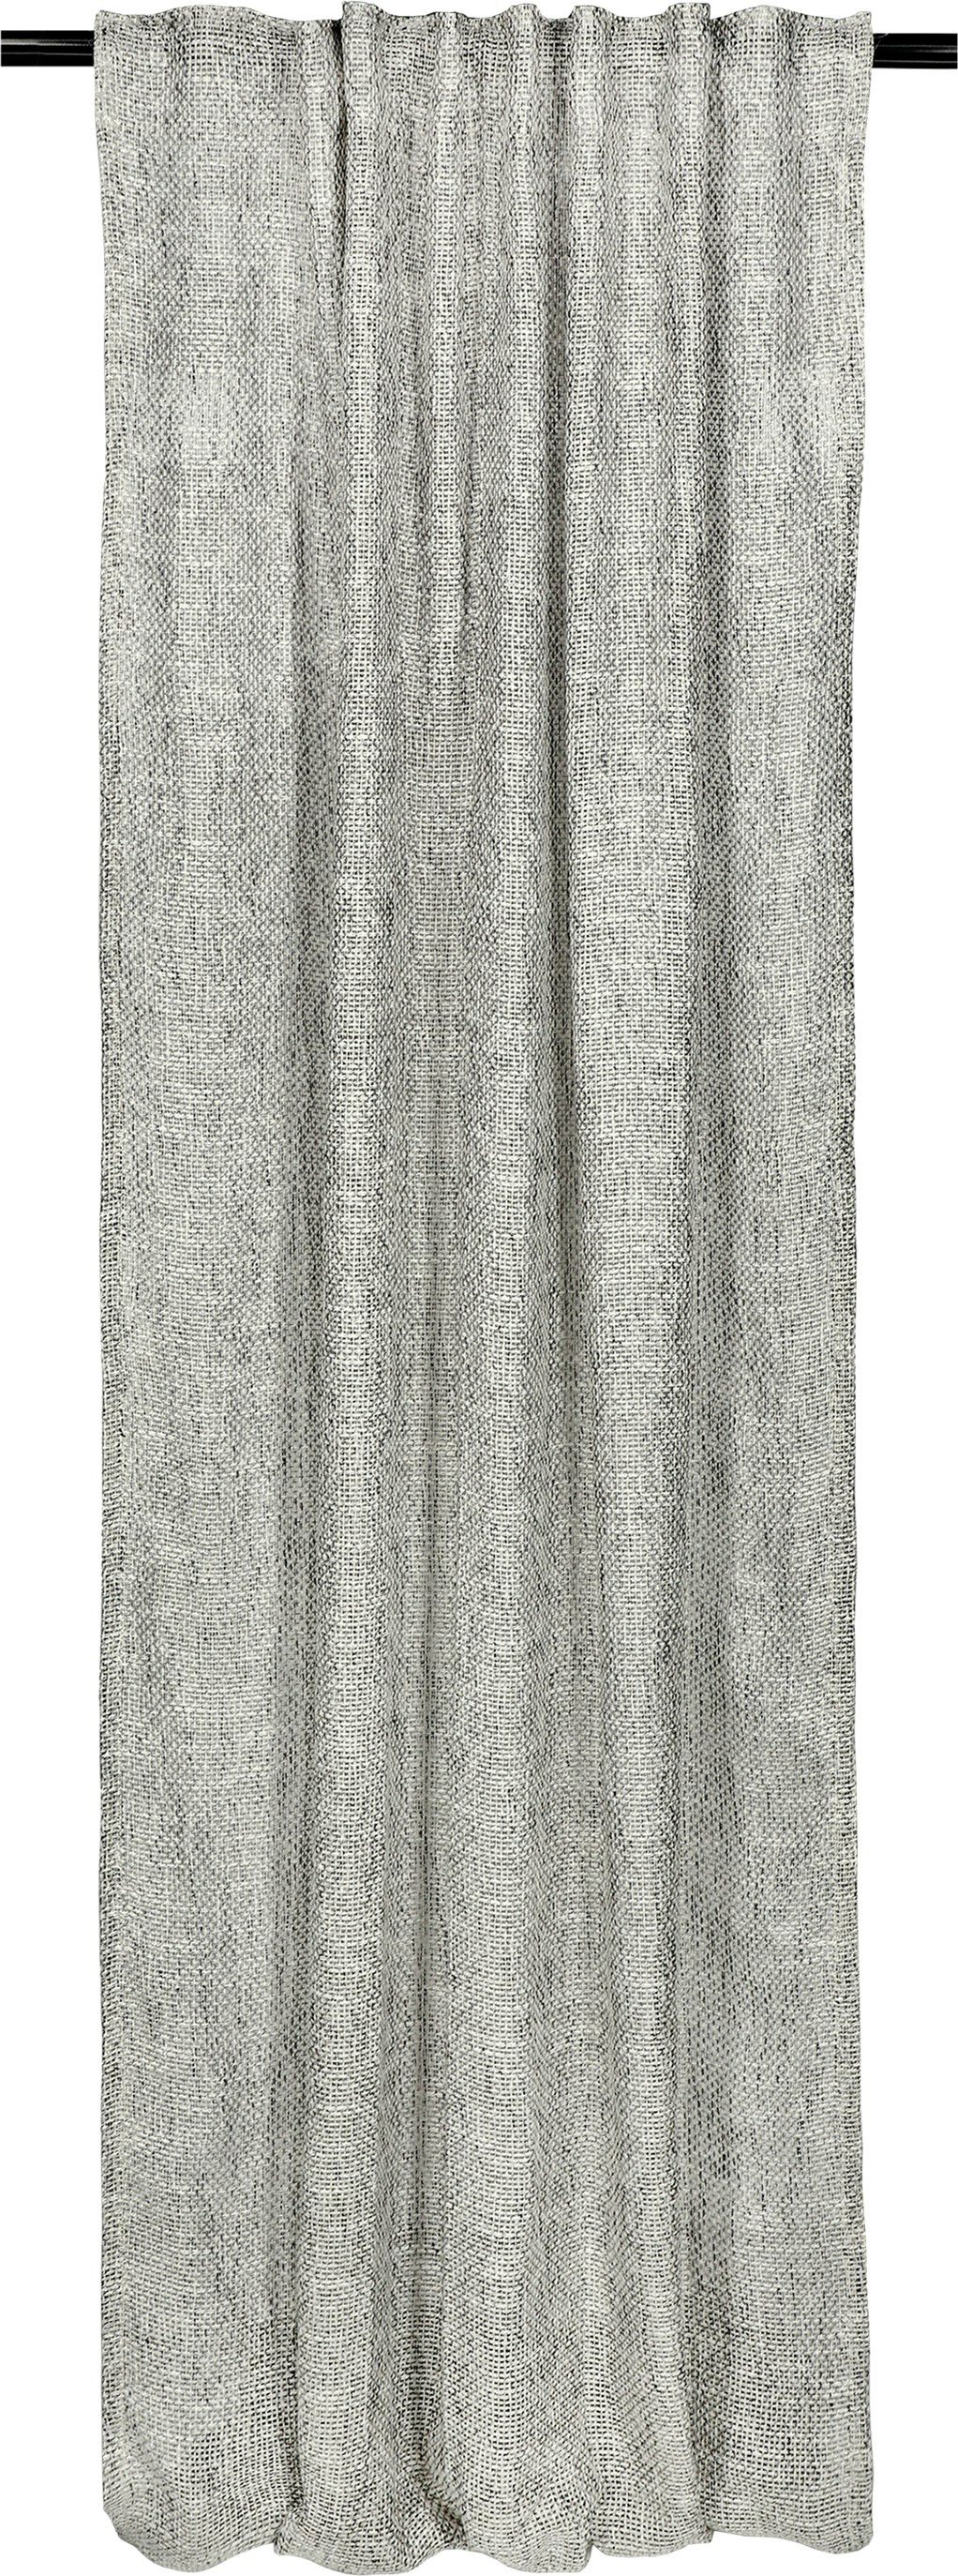 SCHÖNER WOHNEN-Kollektion Bright Vorhang kaufen | SCHÖNER WOHNEN-Shop